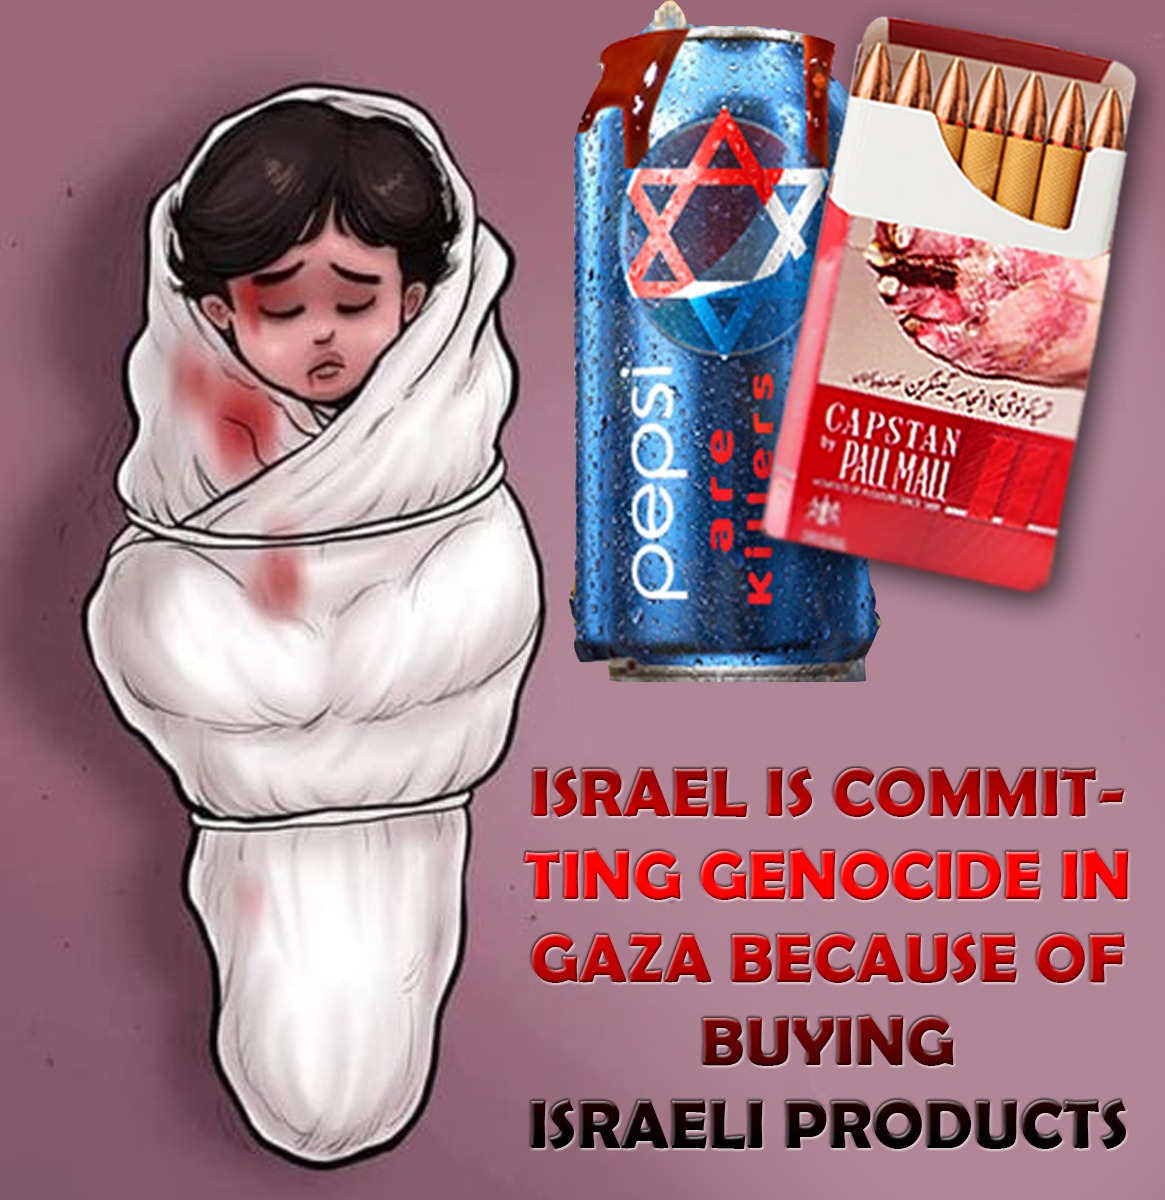 آپکے پیسوں سے اسرائیل گولہ بارود خریدتا ہے 
اور آپکے مسلم بہن بھائیوں پر برساتا ہے 
آپ کو کیسے یہ گوارہ!!!
#فری_فلسطین